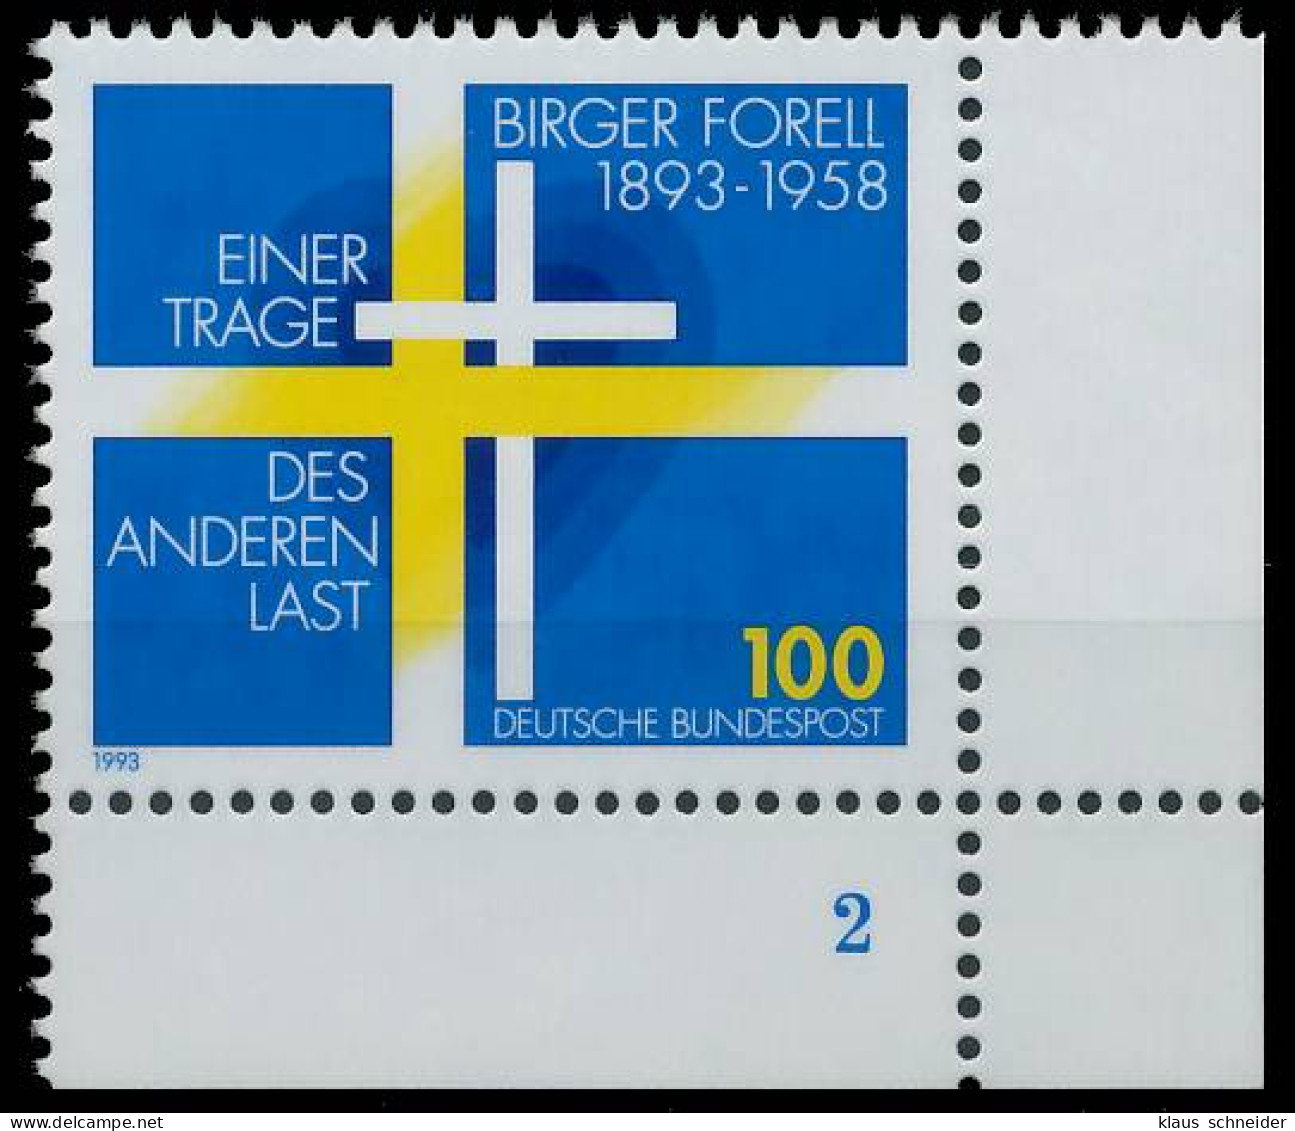 BRD BUND 1993 Nr 1693 Postfrisch FORMNUMMER 2 X56F696 - Unused Stamps